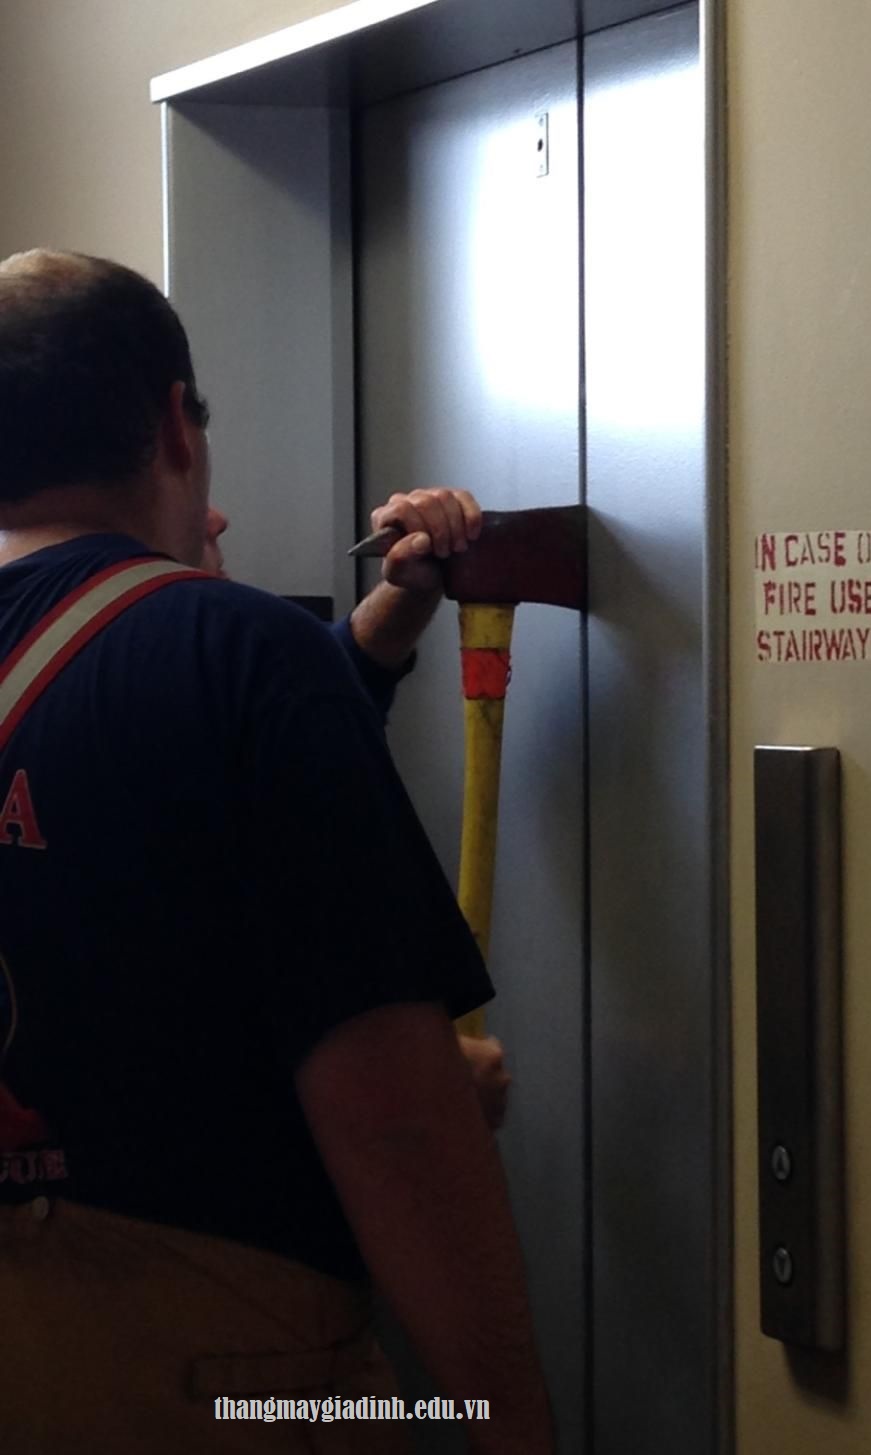 Tư vấn việc nên làm để tránh sự cố thang máy